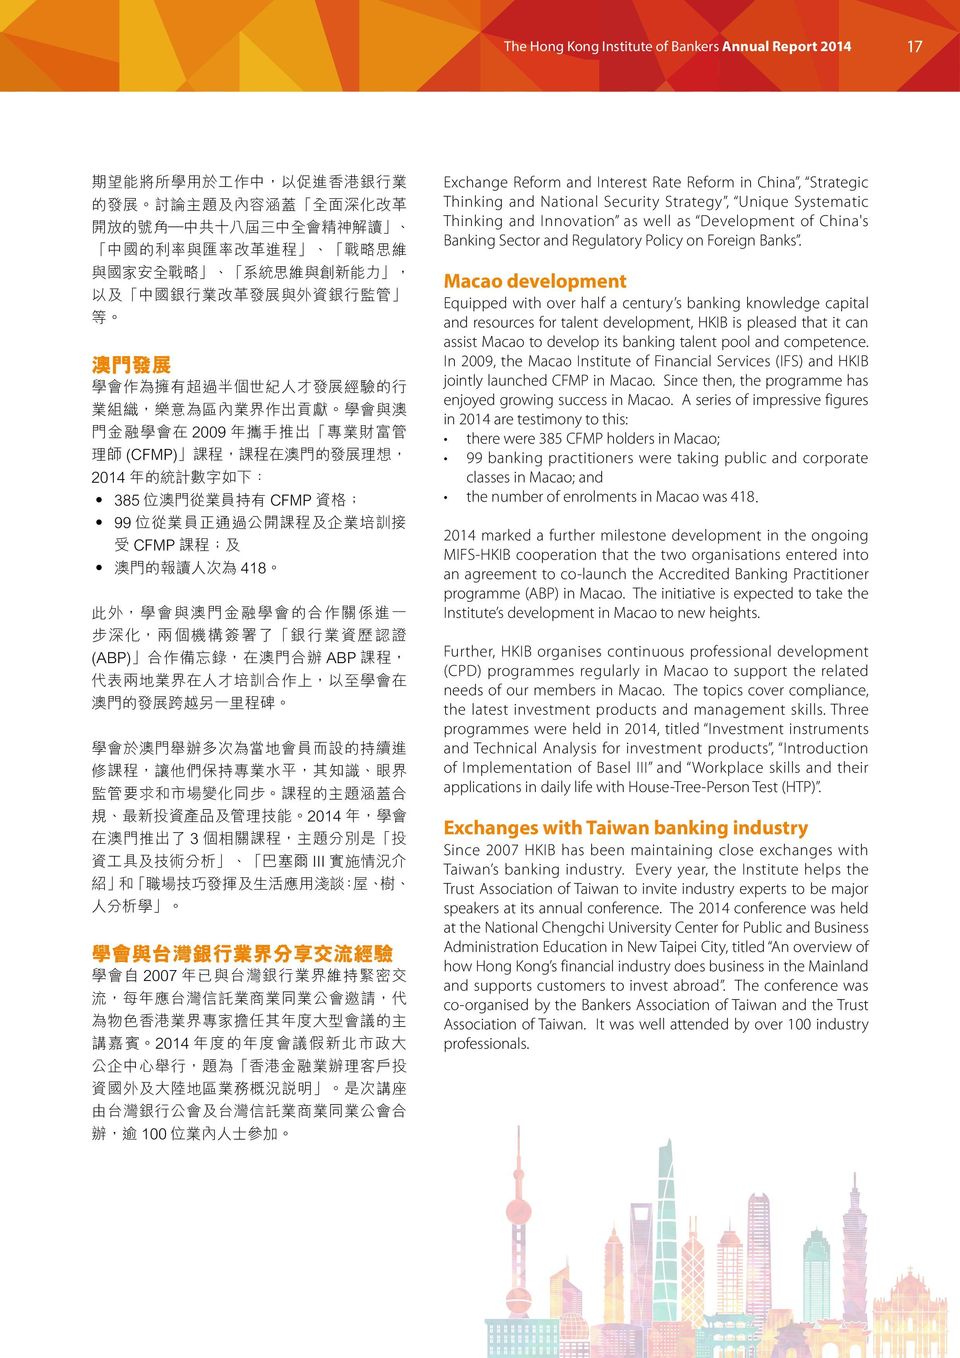 forex嘉盛外汇平台 forex Jiasheng foreign exchange platform